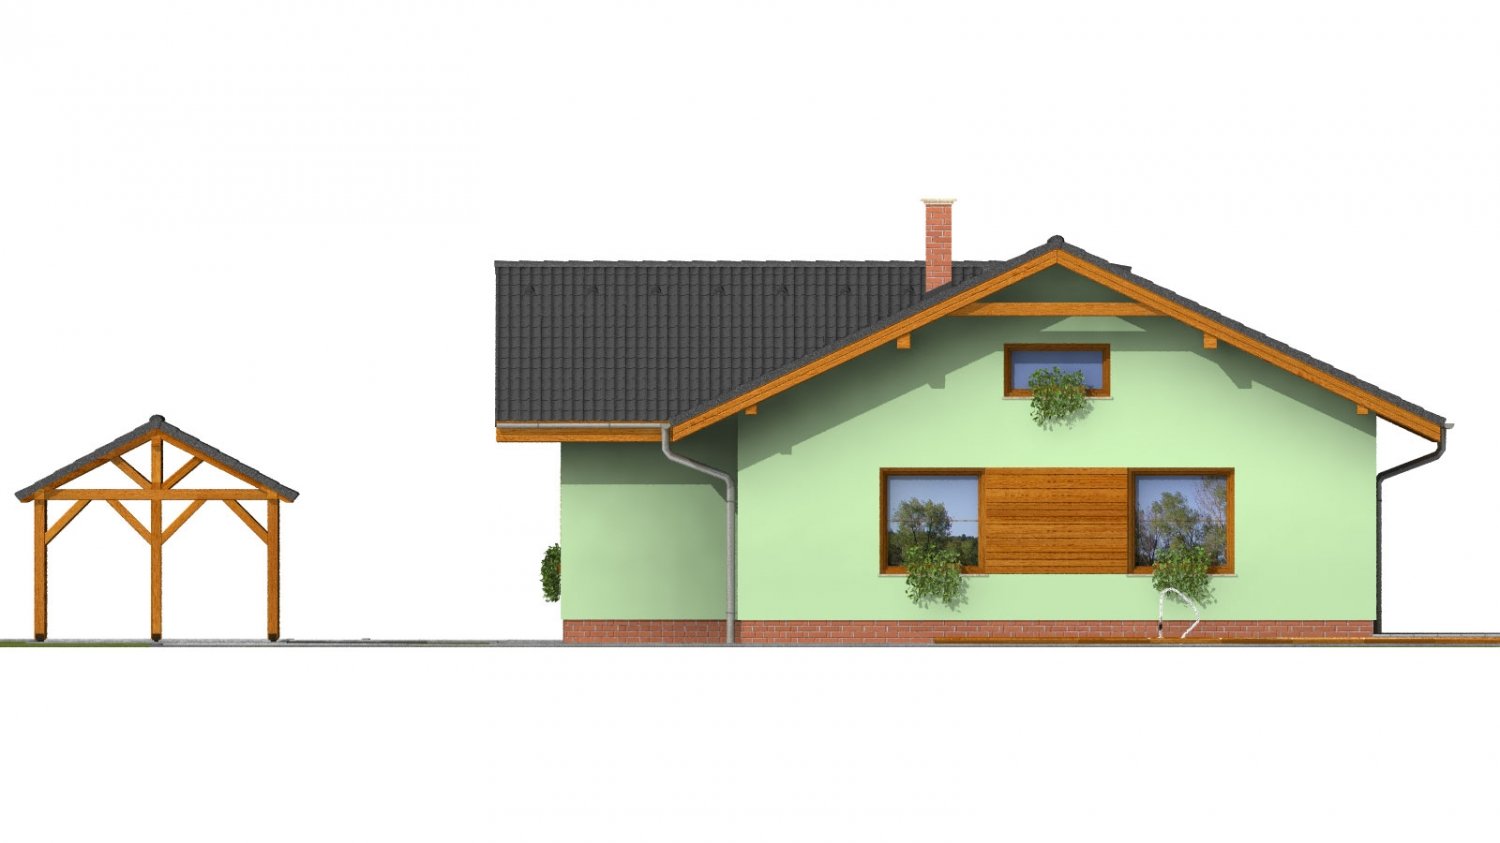 Pohľad 2. - Zděný dům s bočním vstupem a sedlovými střechami.